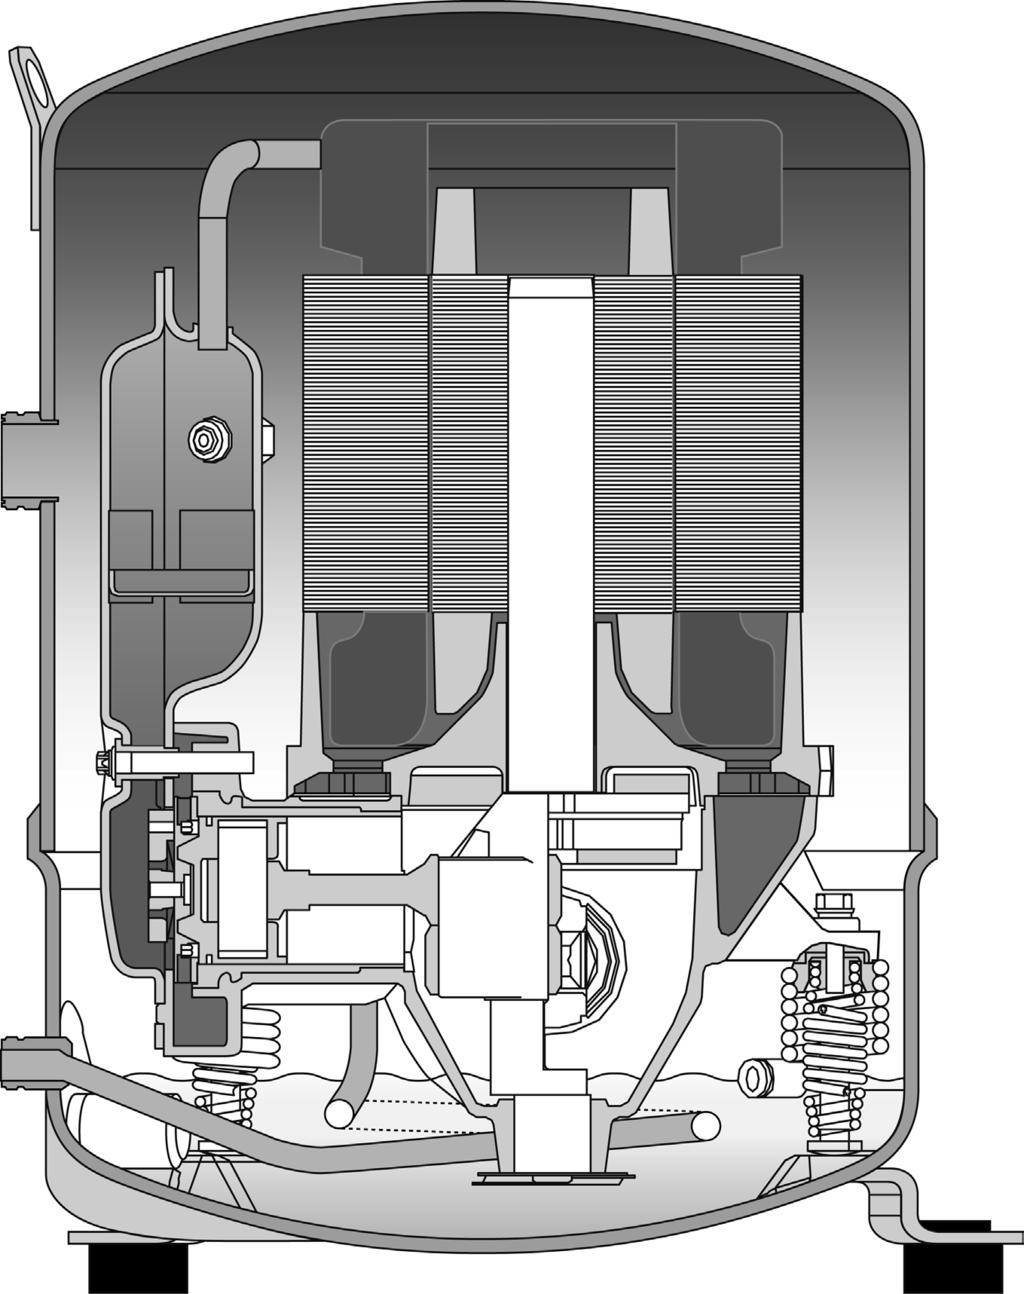 SPRĘŻARKI TŁOKOWE MANEUROP Sprężarki tłokowe Maneurop produkowane przez Danfoss Commercial Compressors, są specjalnie zaprojektowane do zastosowań w bardzo szerokim zakresie warunków pracy.